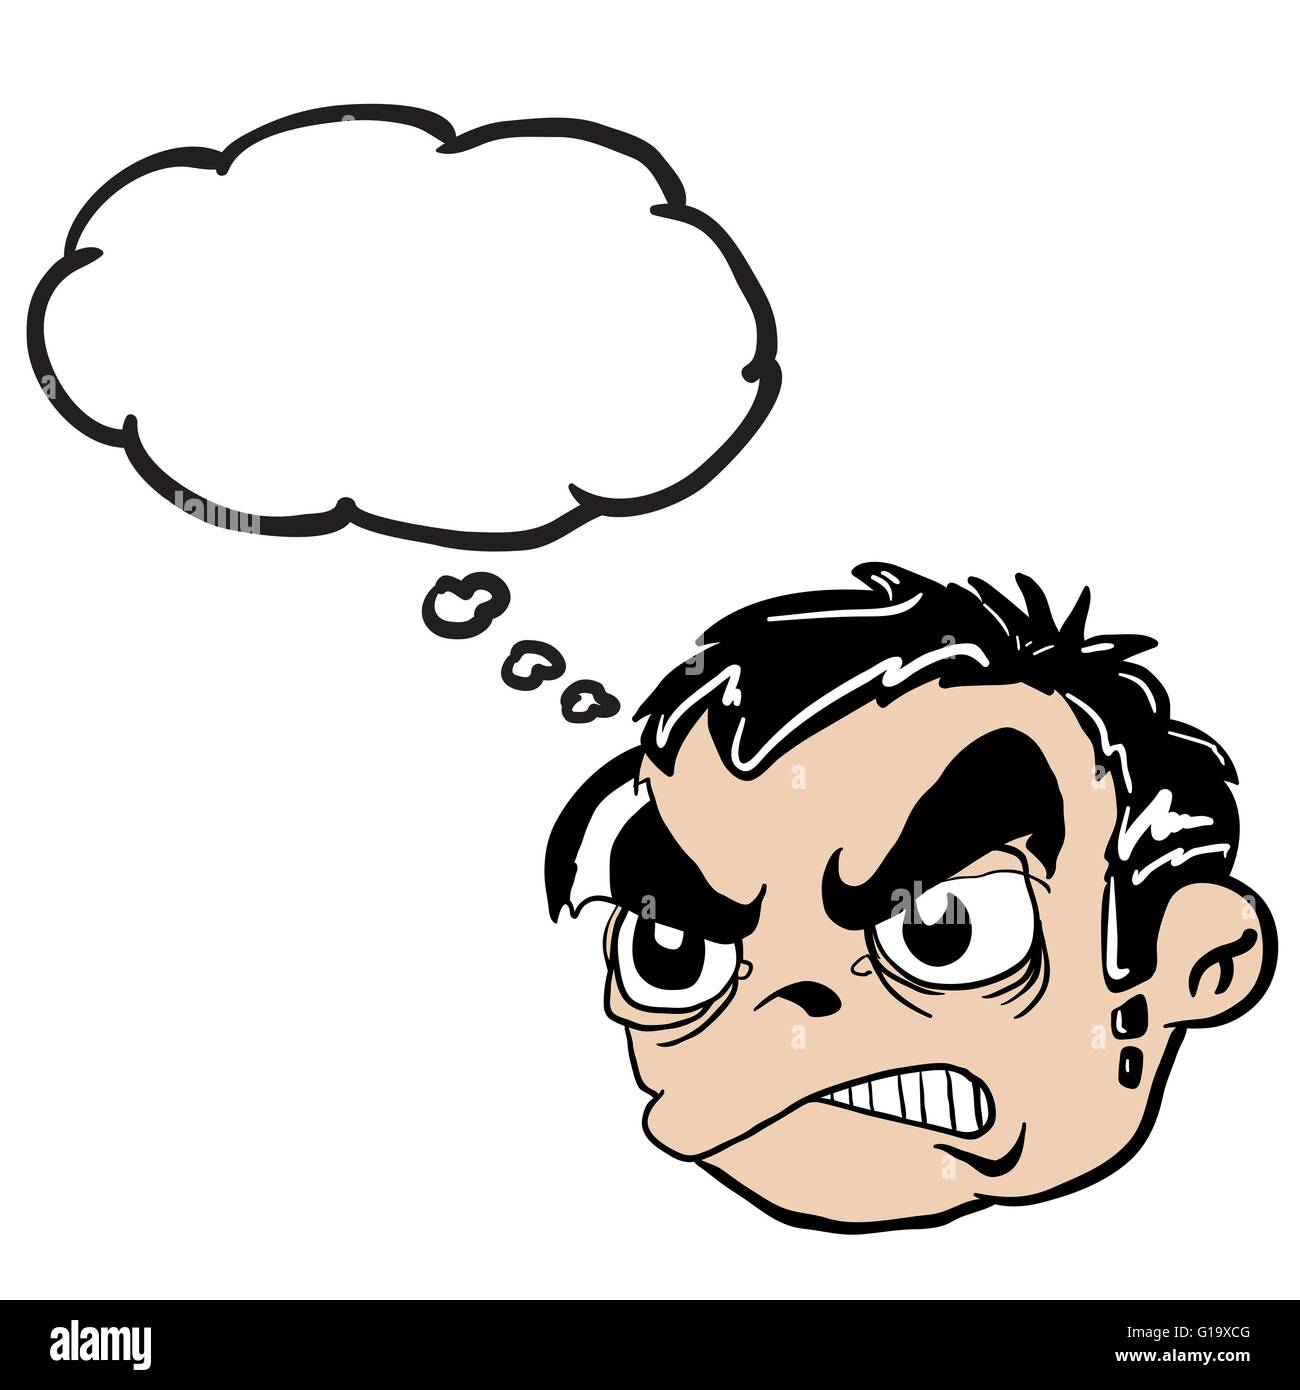 Kopf mit wütenden jungen dachte Blase Cartoon illustration Stock Vektor